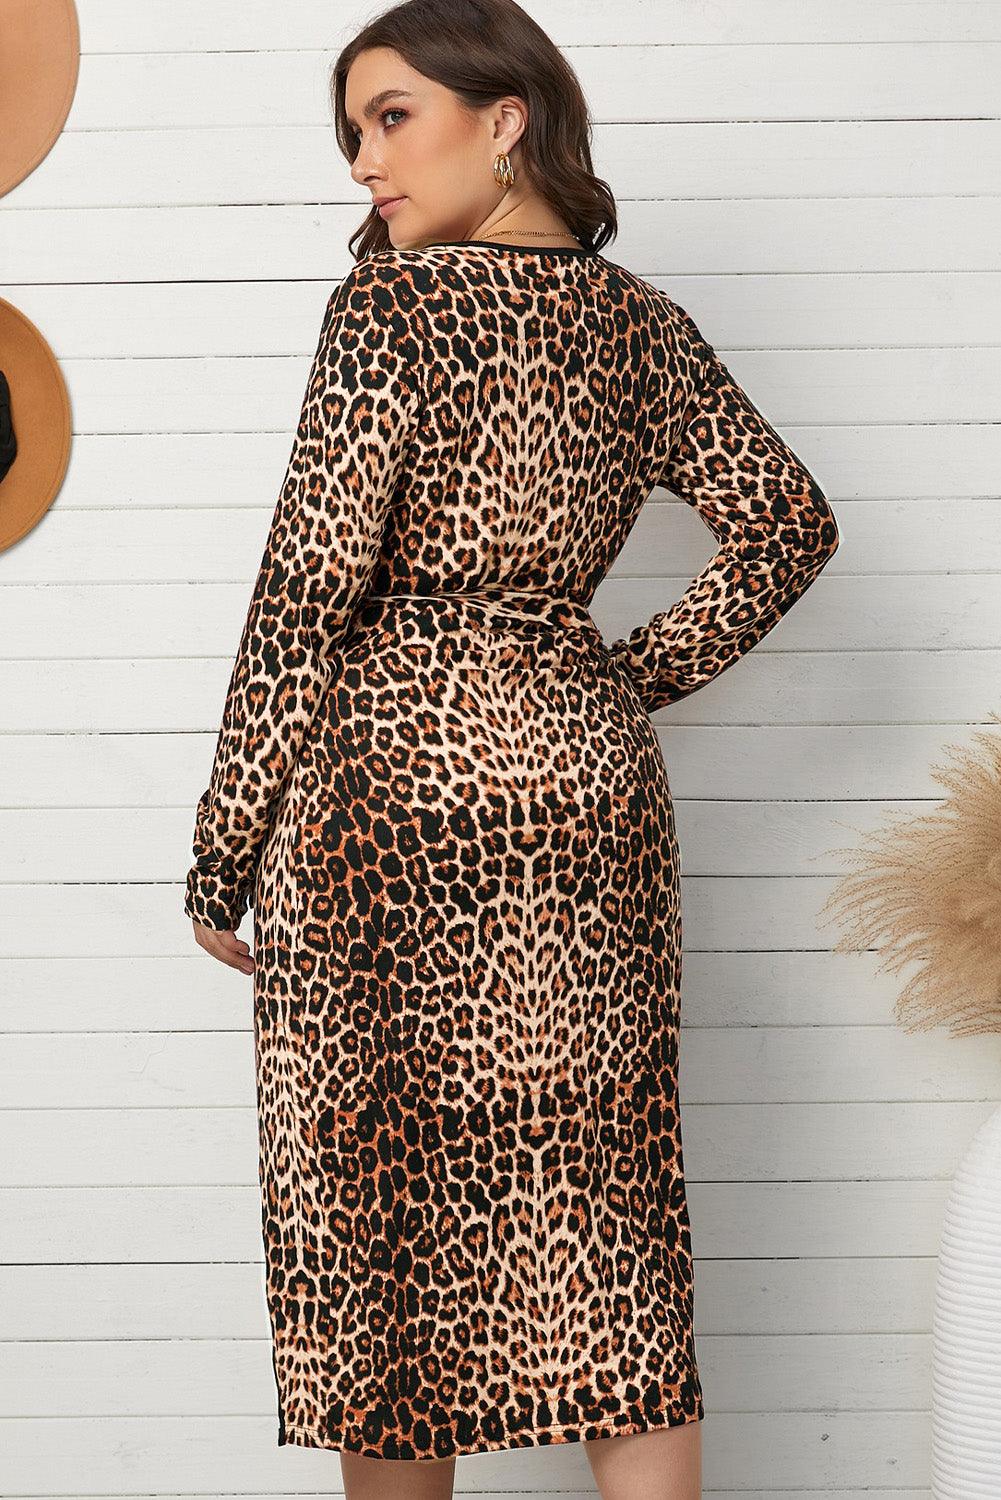 Women's Dresses Plus Size Leopard Belted Surplice Wrap Dress